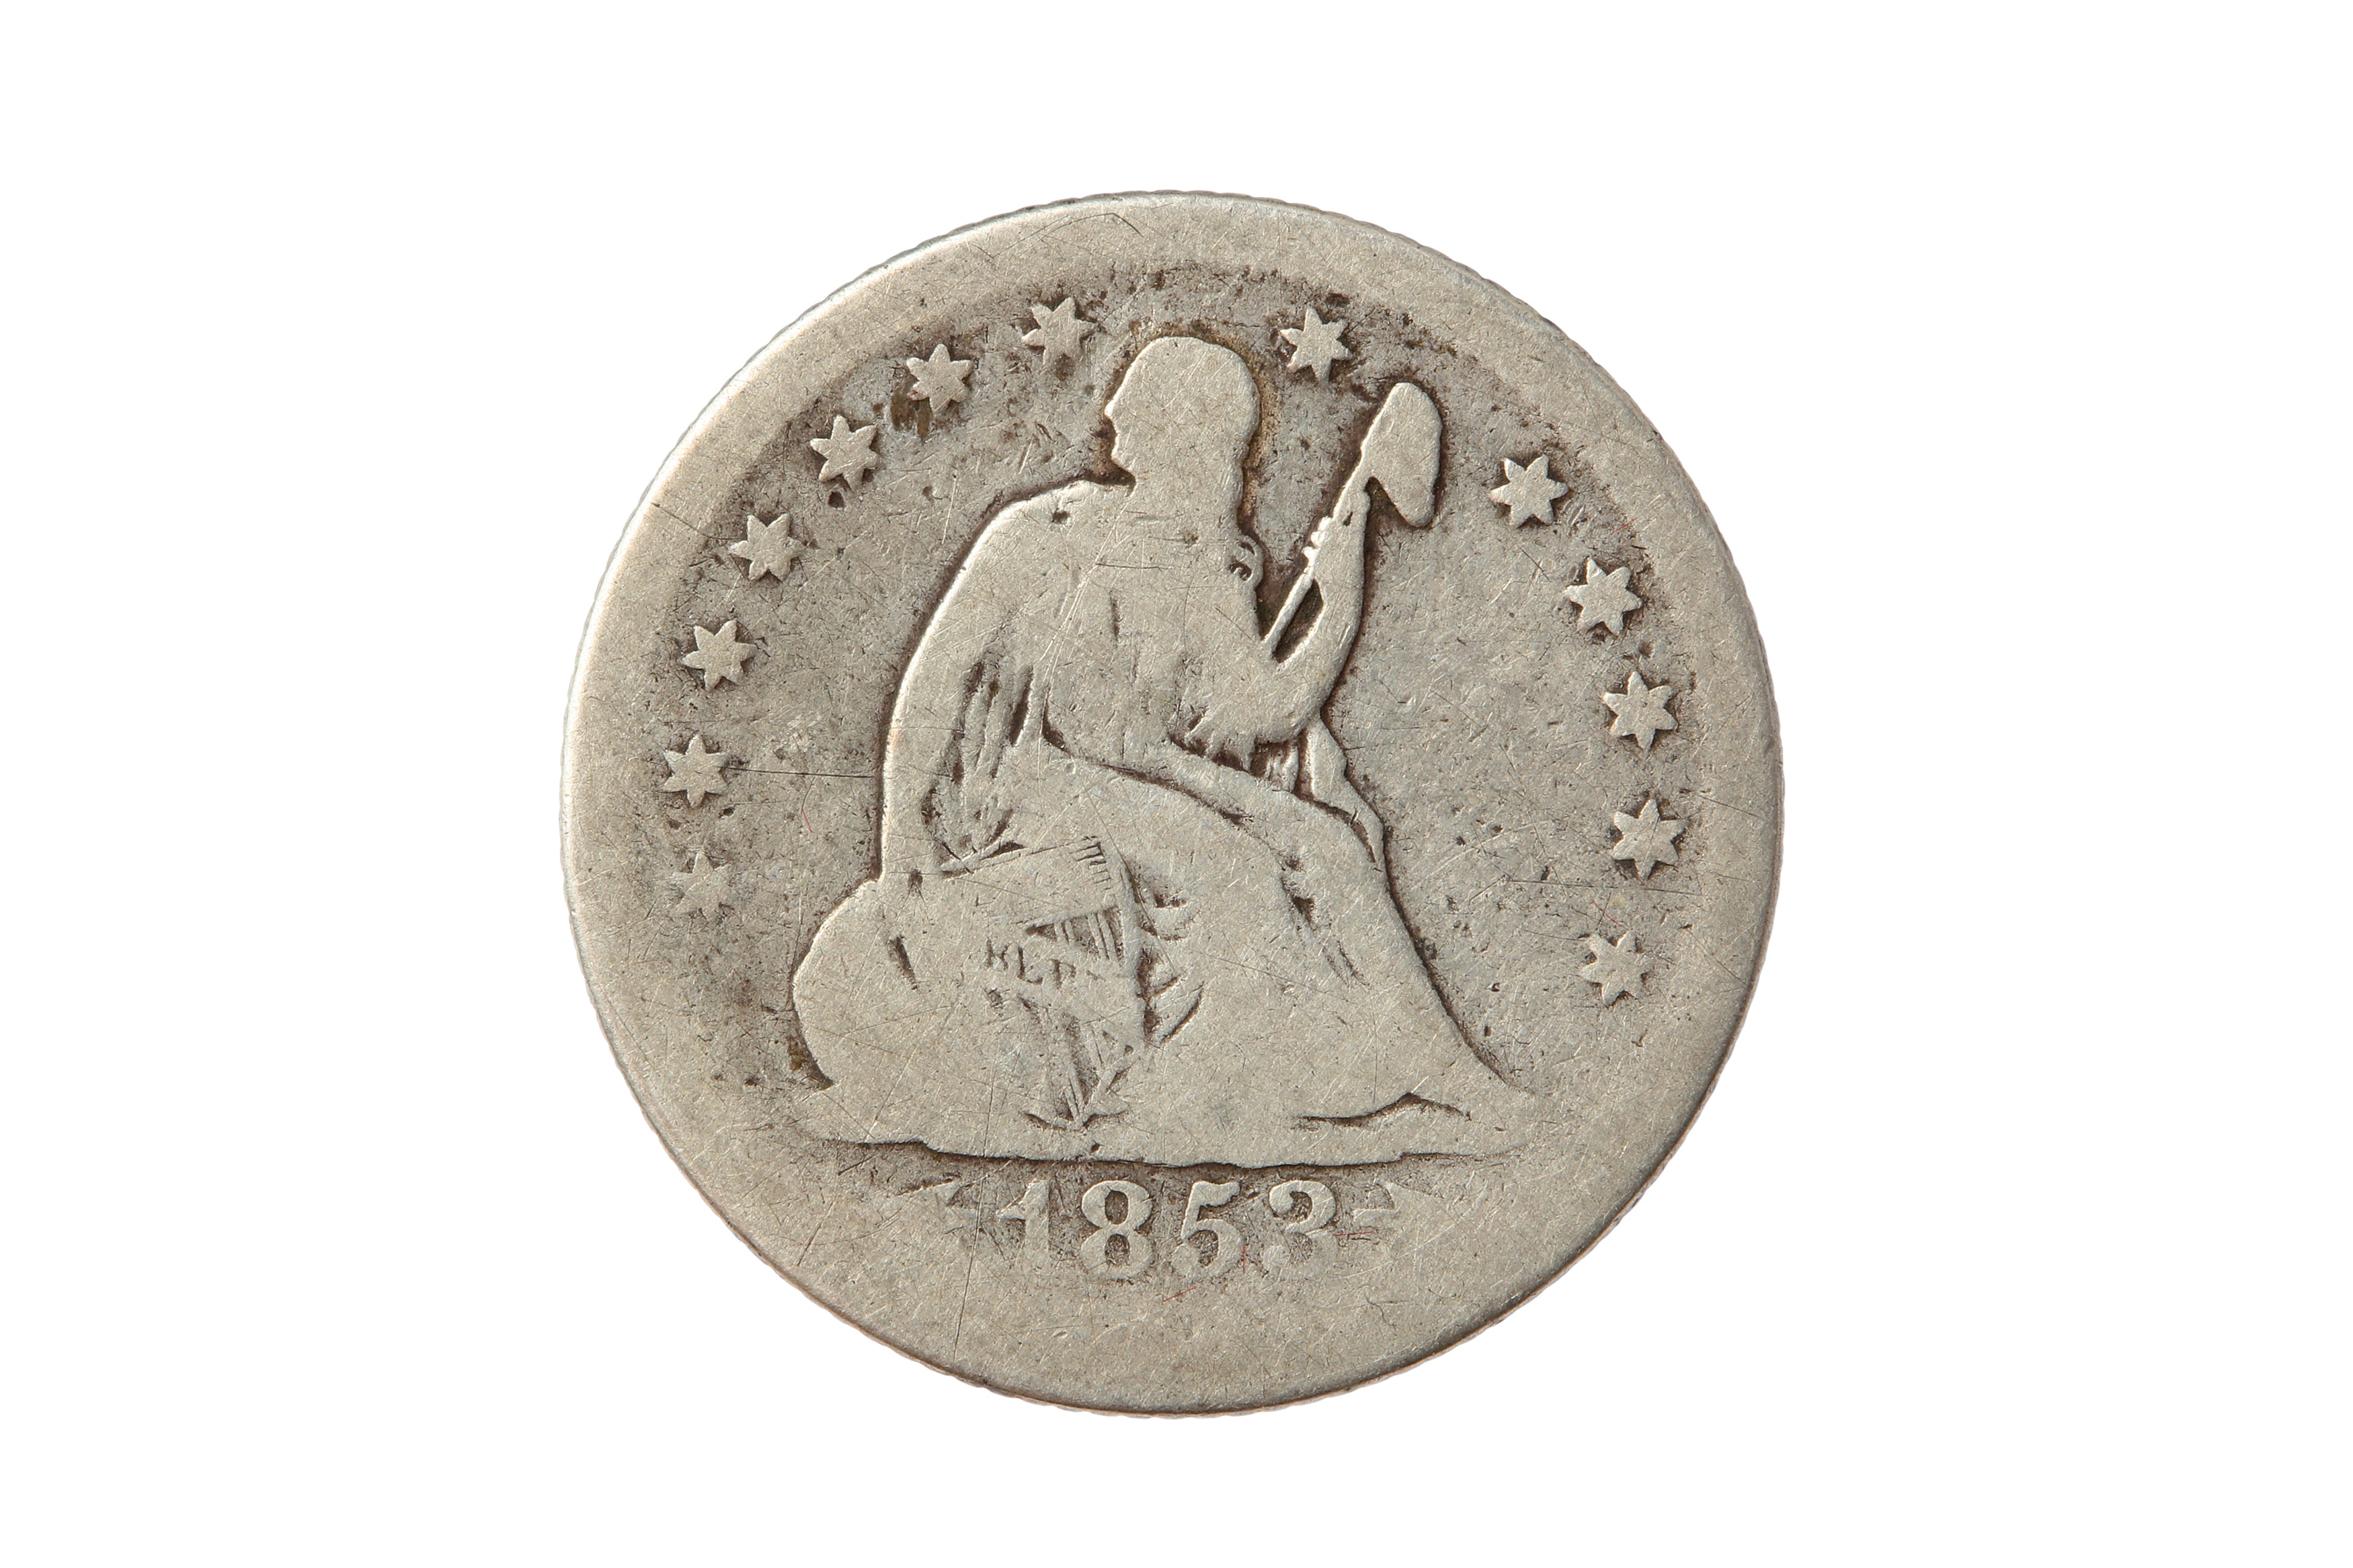 USA, 1853-O 25 CENTS/QUARTER DOLLAR.